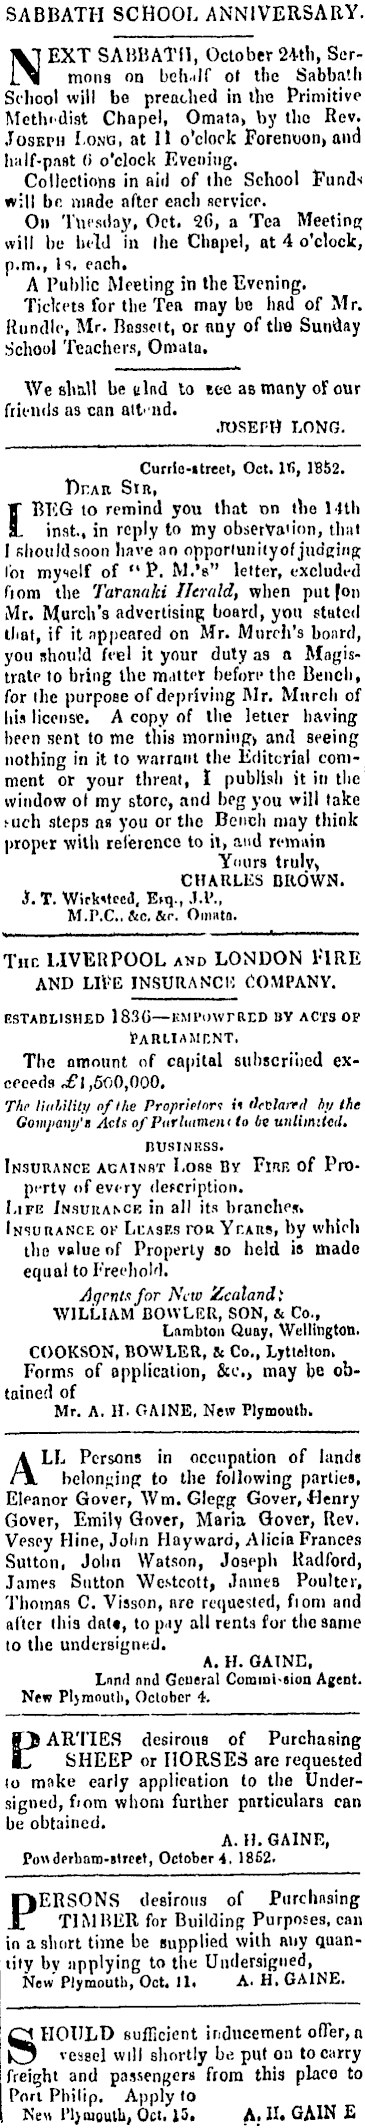 October 16, 1852